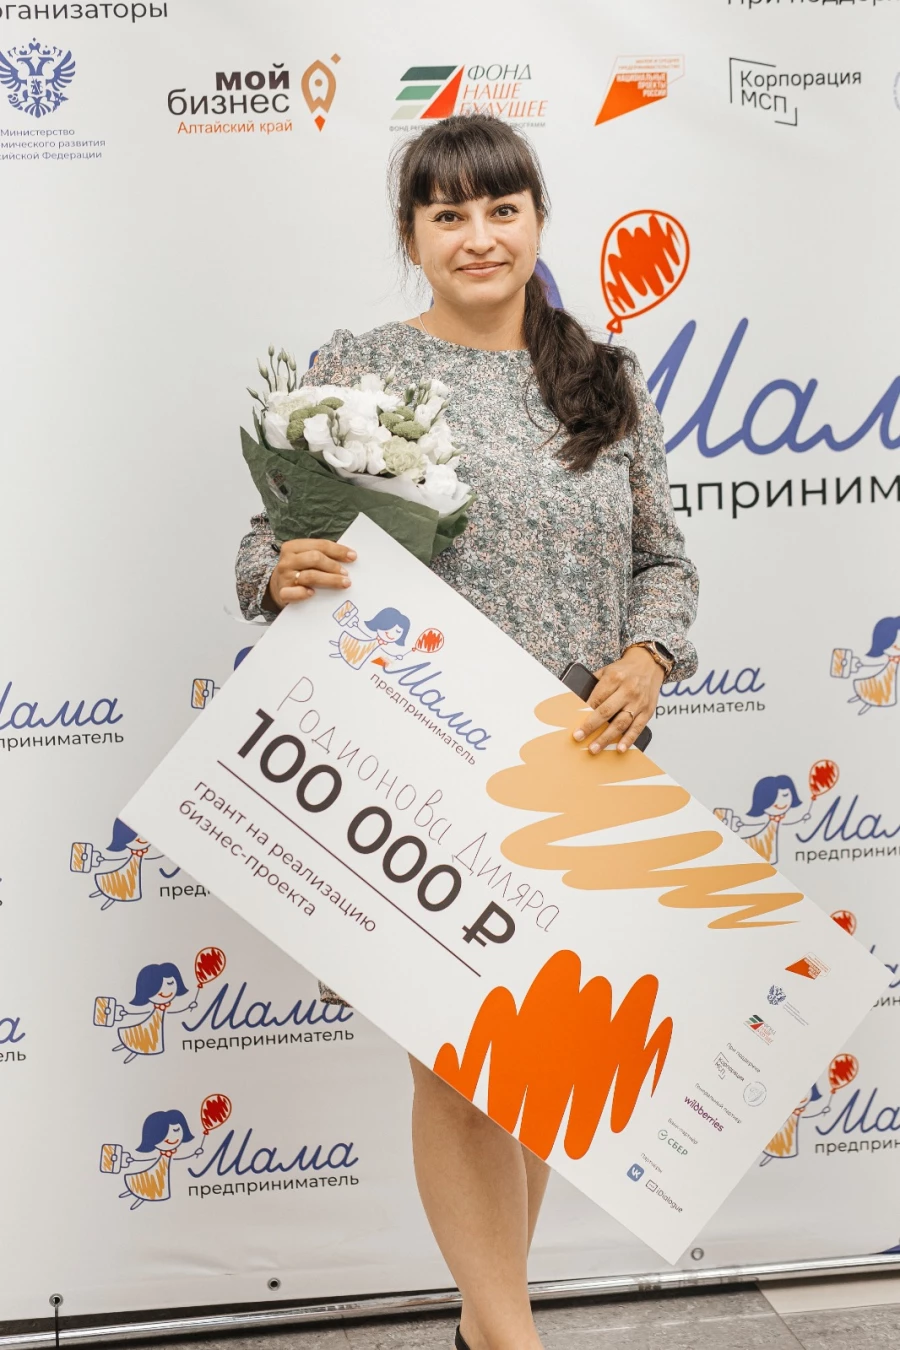  В Алтайском крае завершилась федеральная образовательная программа по развитию женского бизнеса «Мама-предприниматель».